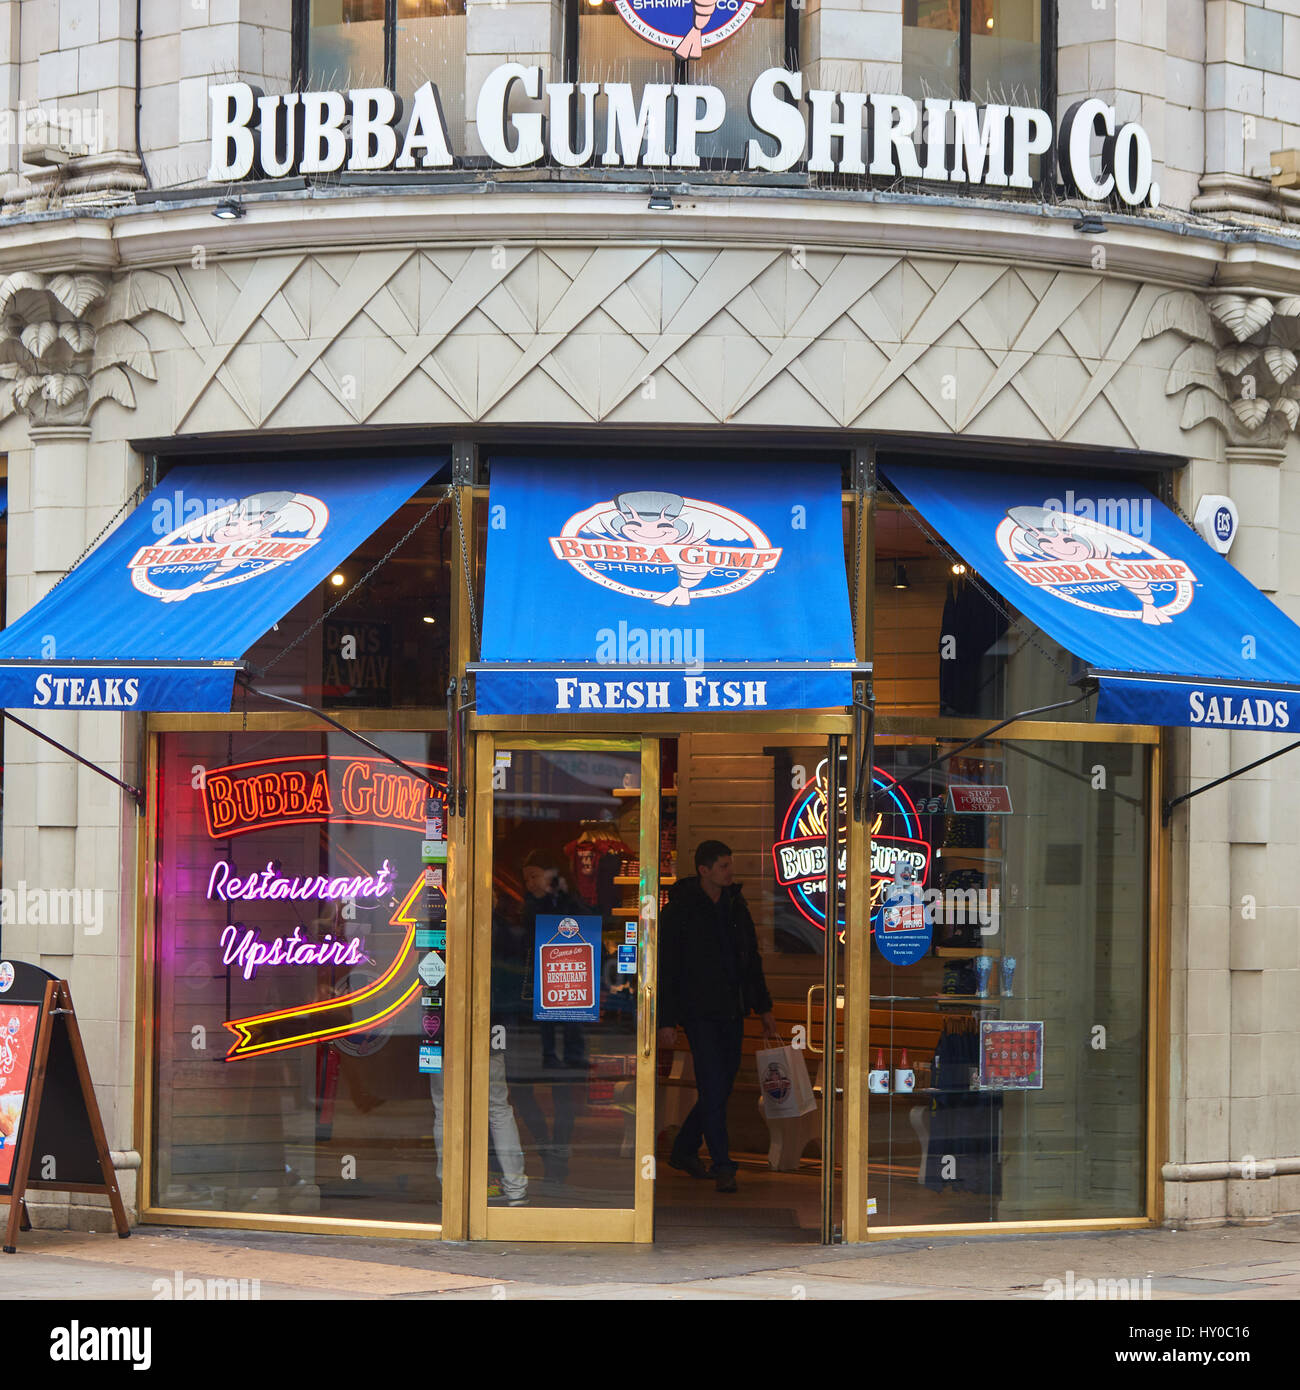 Gesamtansicht der Bubba Gump Shrimp Co. Restaurant in London Stockfoto